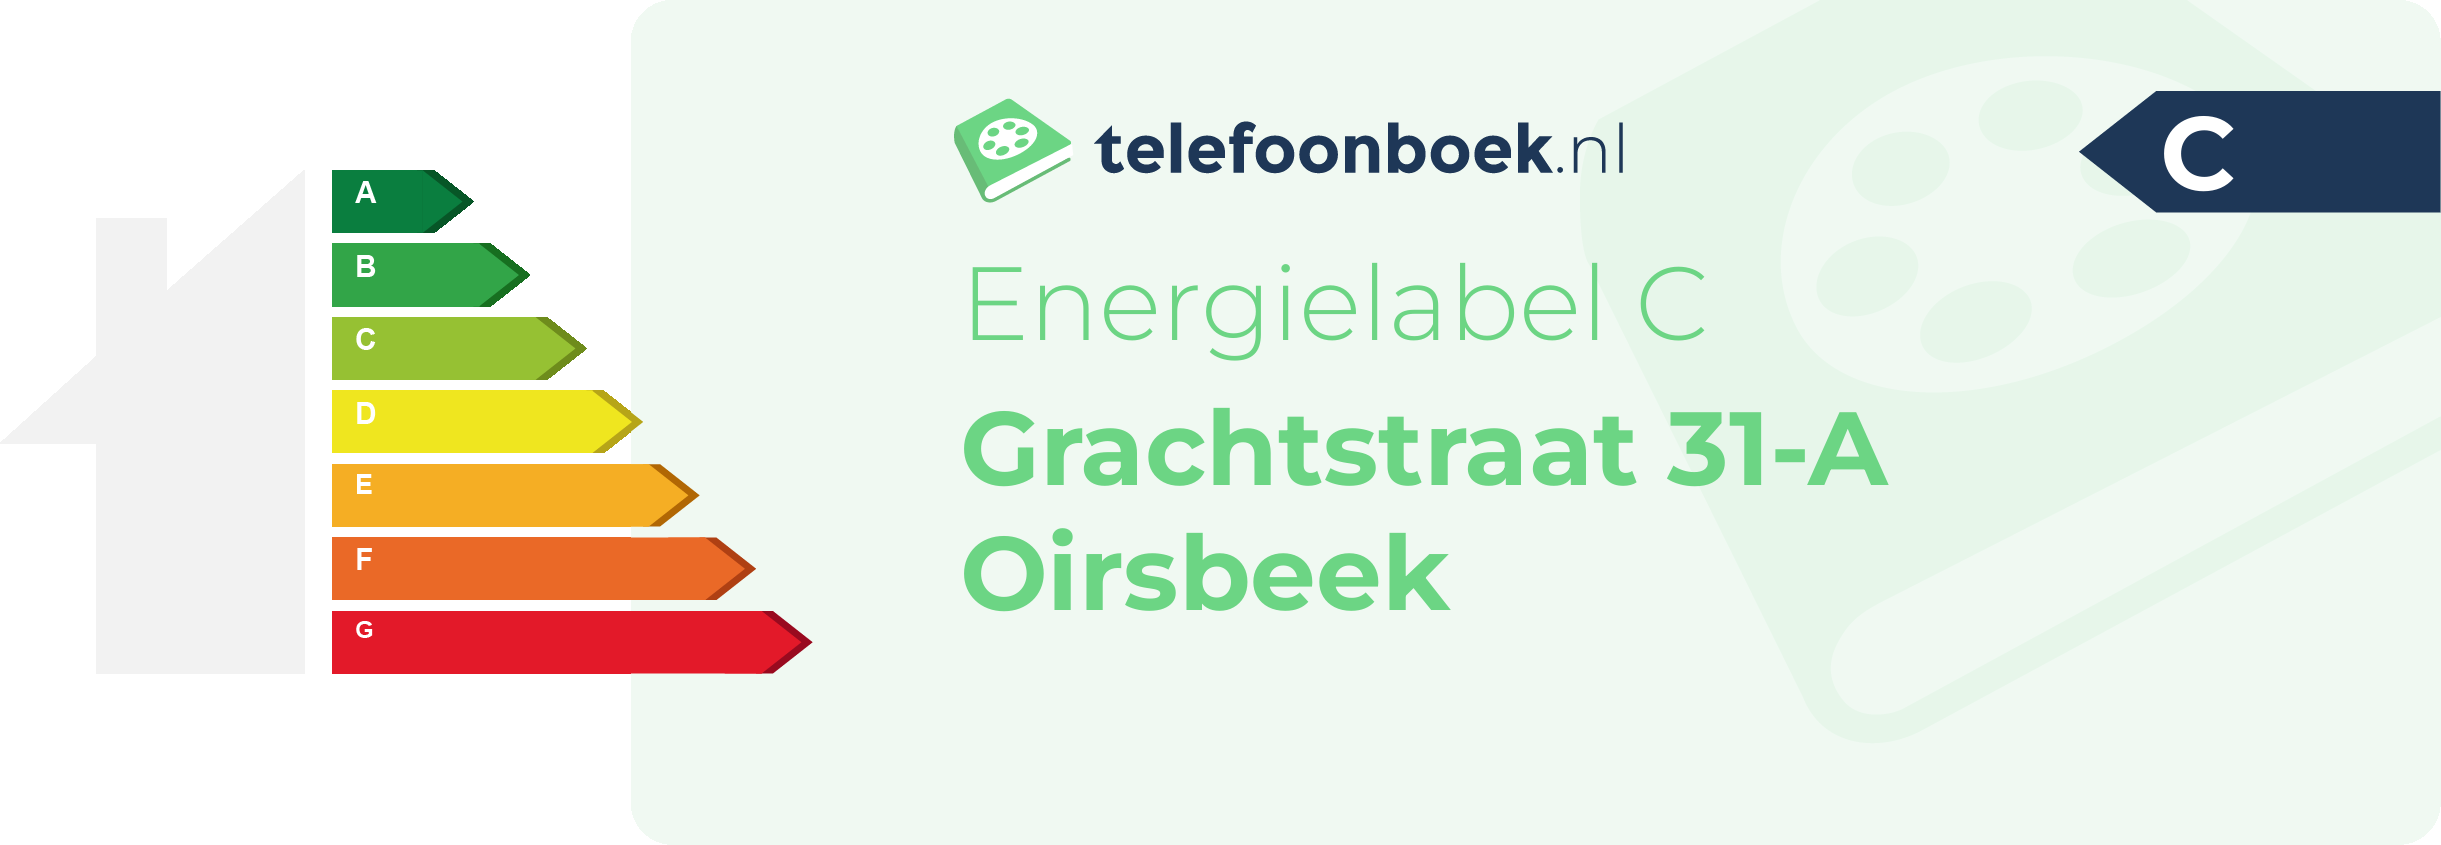 Energielabel Grachtstraat 31-A Oirsbeek